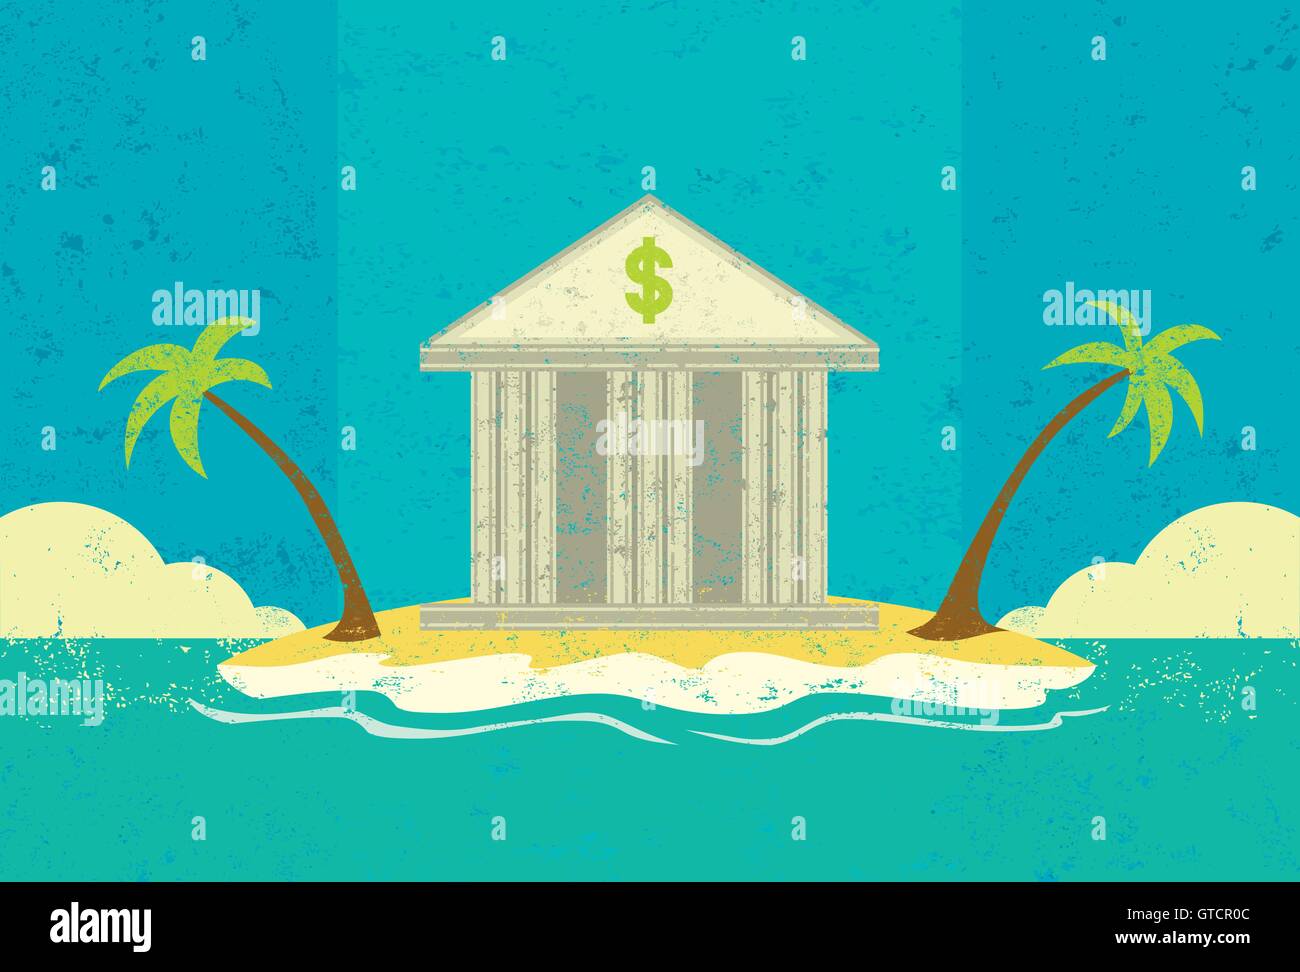 Kreditgeber der letzten Resort A Bank auf einer einsamen Südseeinsel repräsentieren eine letzte Möglichkeit, einen Kredit zu bekommen. Stock Vektor